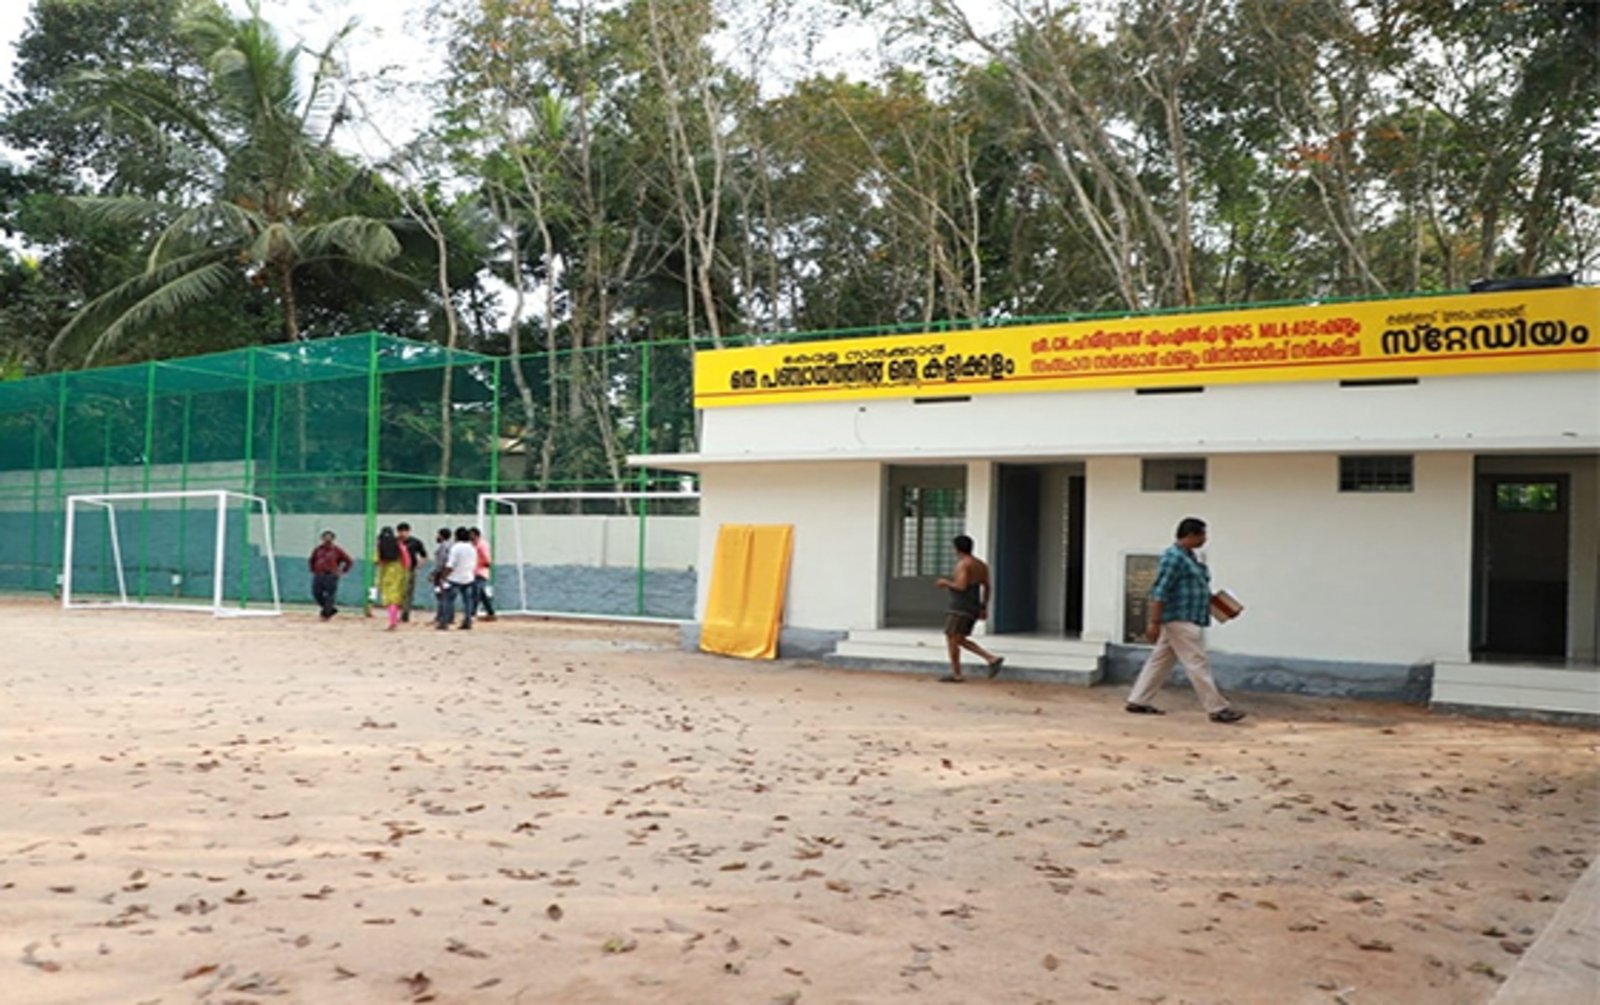 ‘ഒരു പഞ്ചായത്ത് ഒരു കളിക്കളം’ പദ്ധതിയിലെ ആദ്യ കളിക്കളം കള്ളിക്കാട്(Kallikad is the first playground under the ‘One Panchayat One Playground’ project. pathradipar)